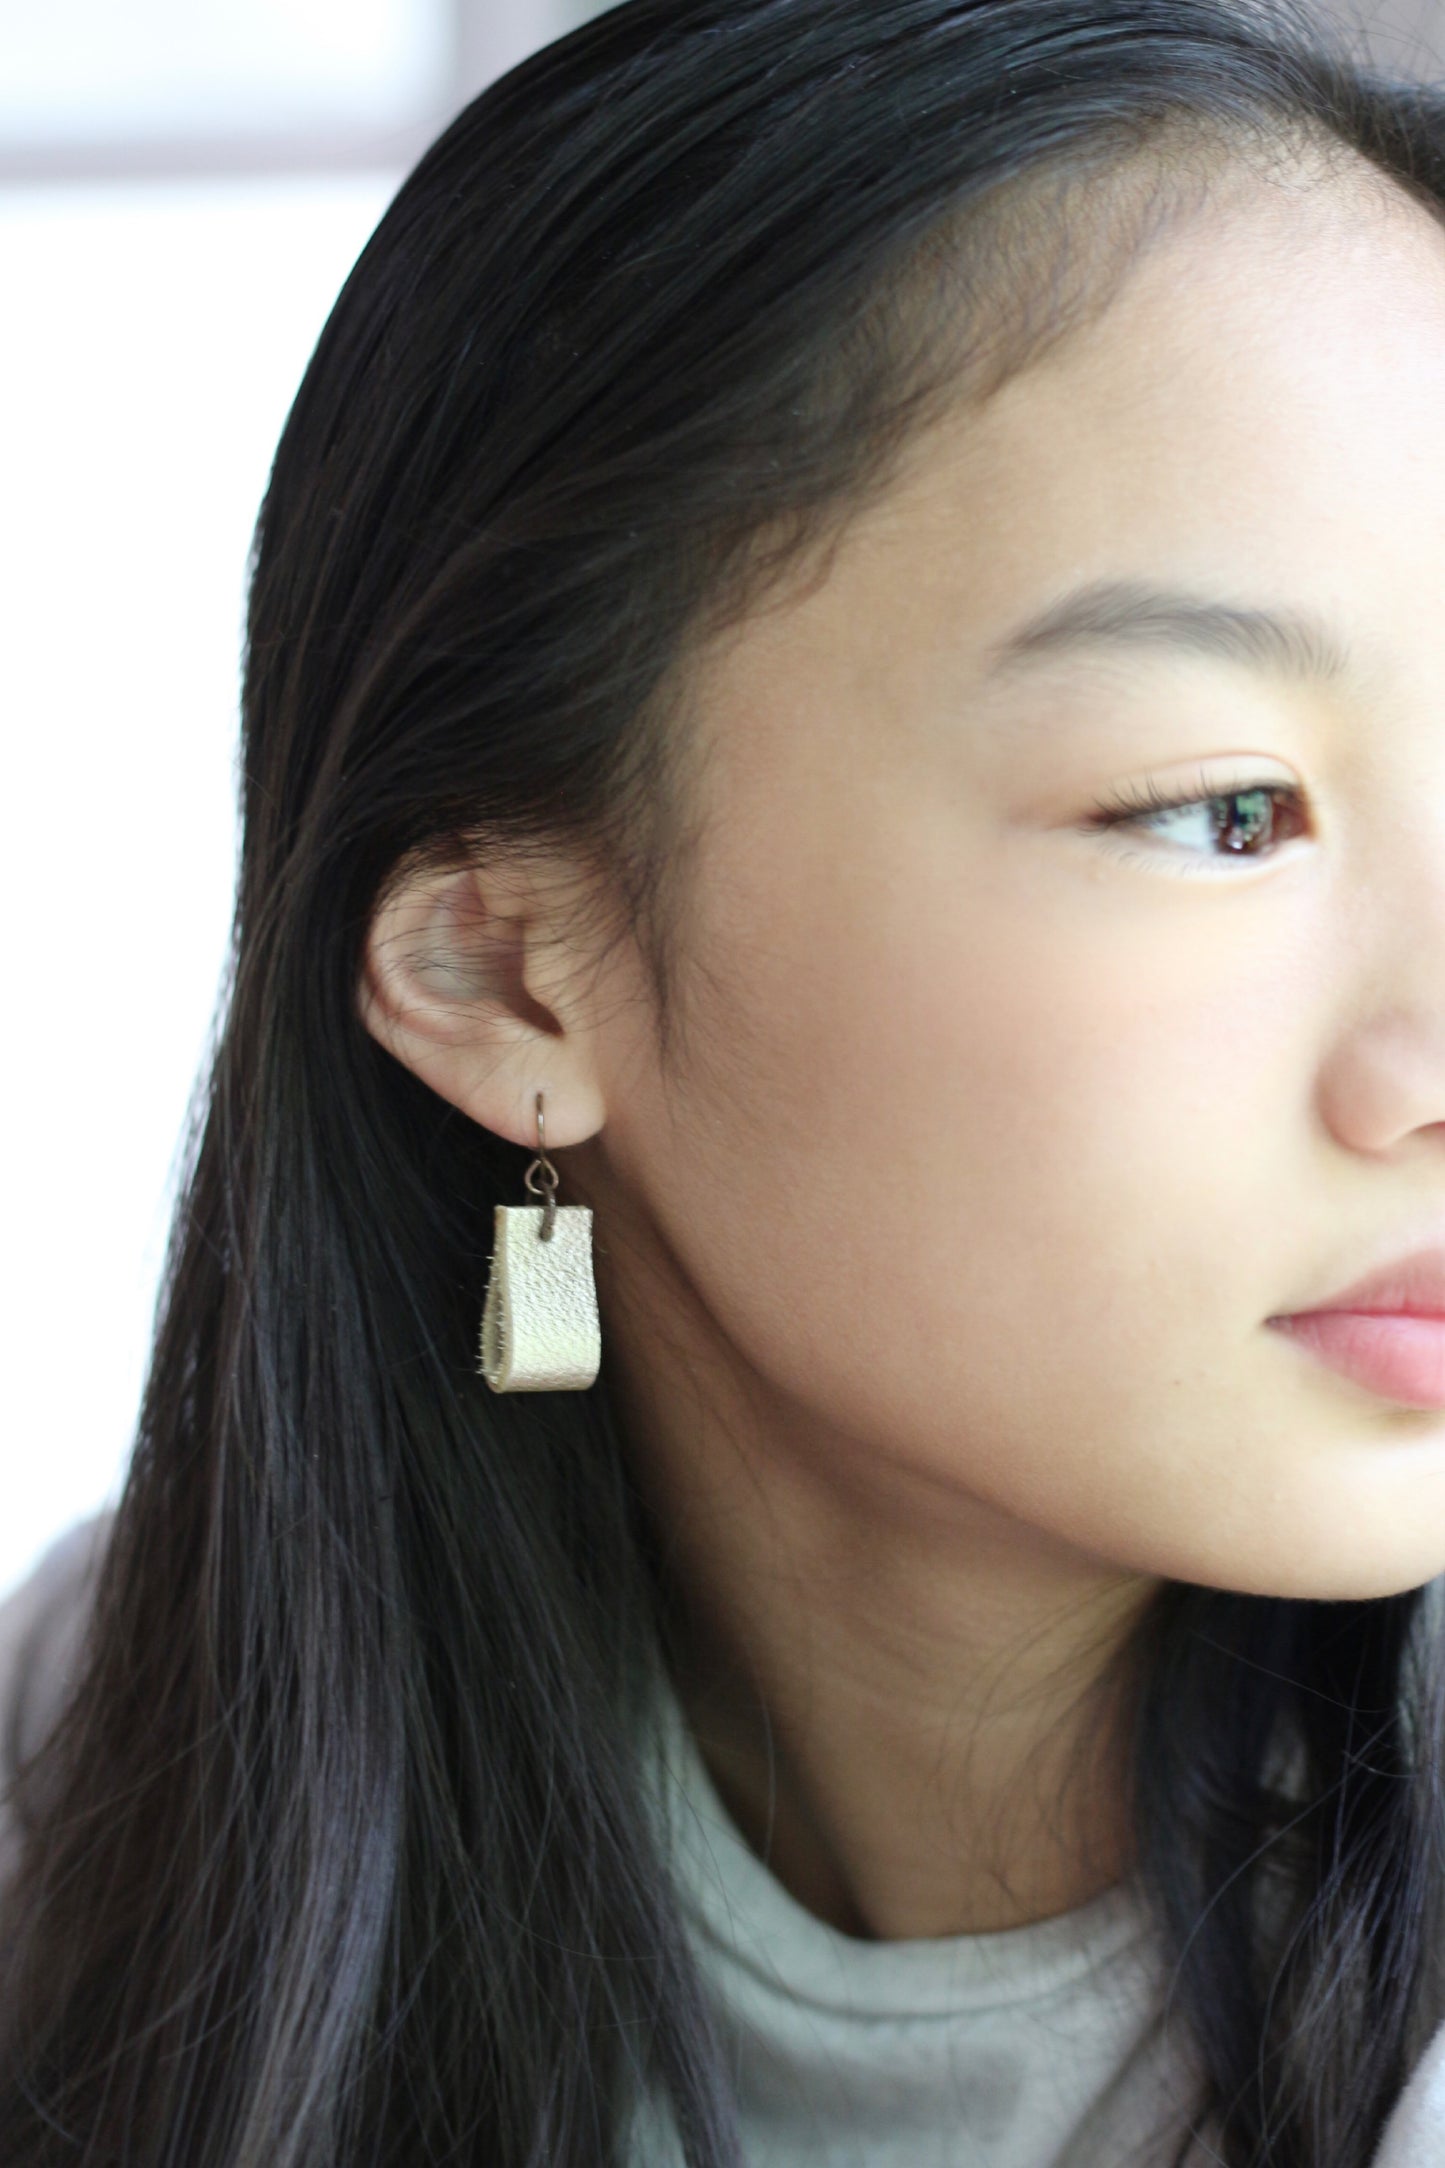 simple loop genuine leather earrings in matte blush pink